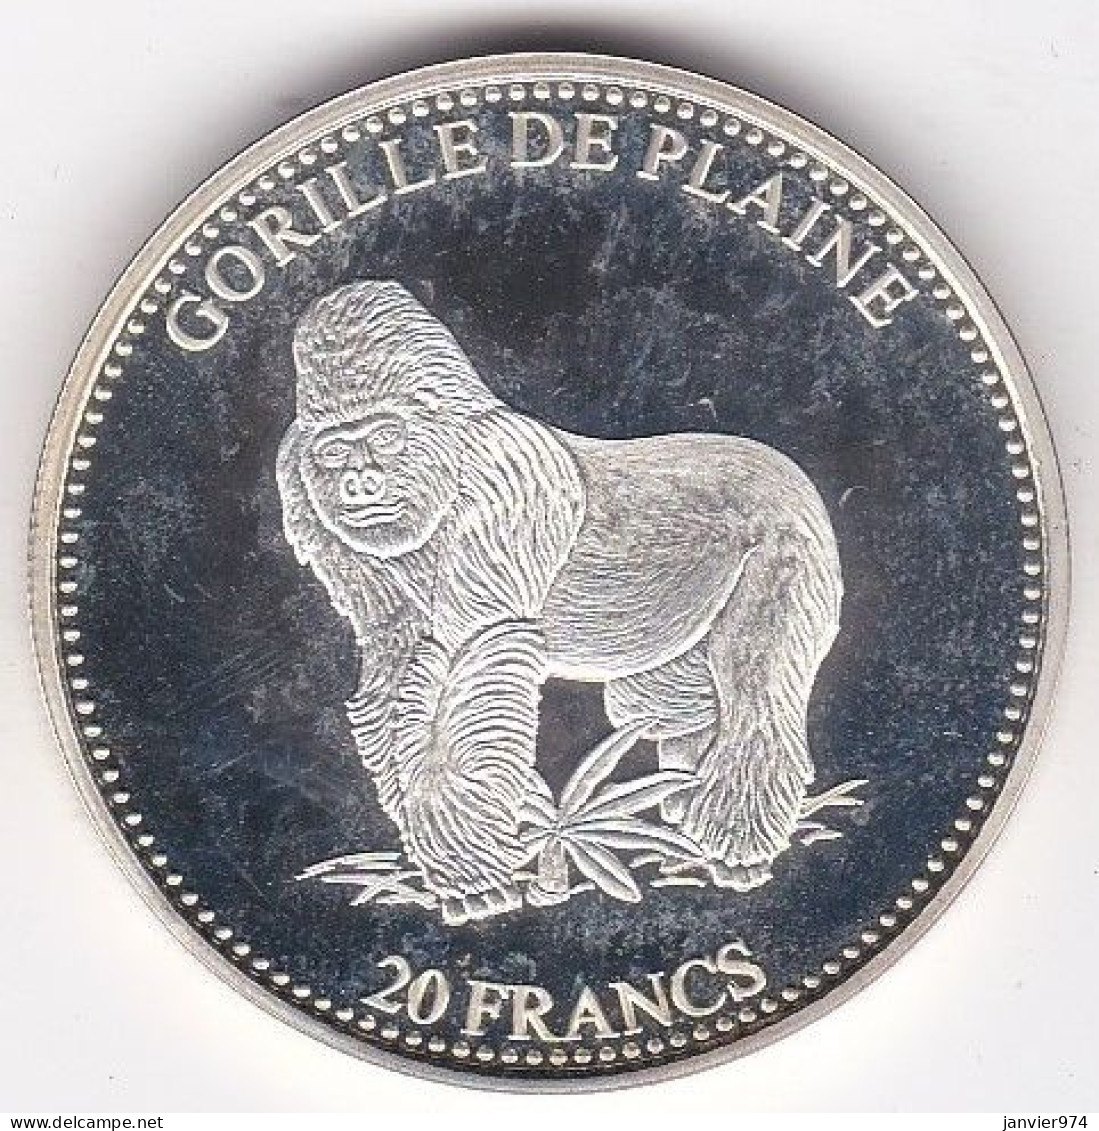 Congo 20 Francs 2001 Proof , Gorille De Plaine, Lion. En Argent. Pur, FDC, - Congo (Repubblica Democratica 1998)